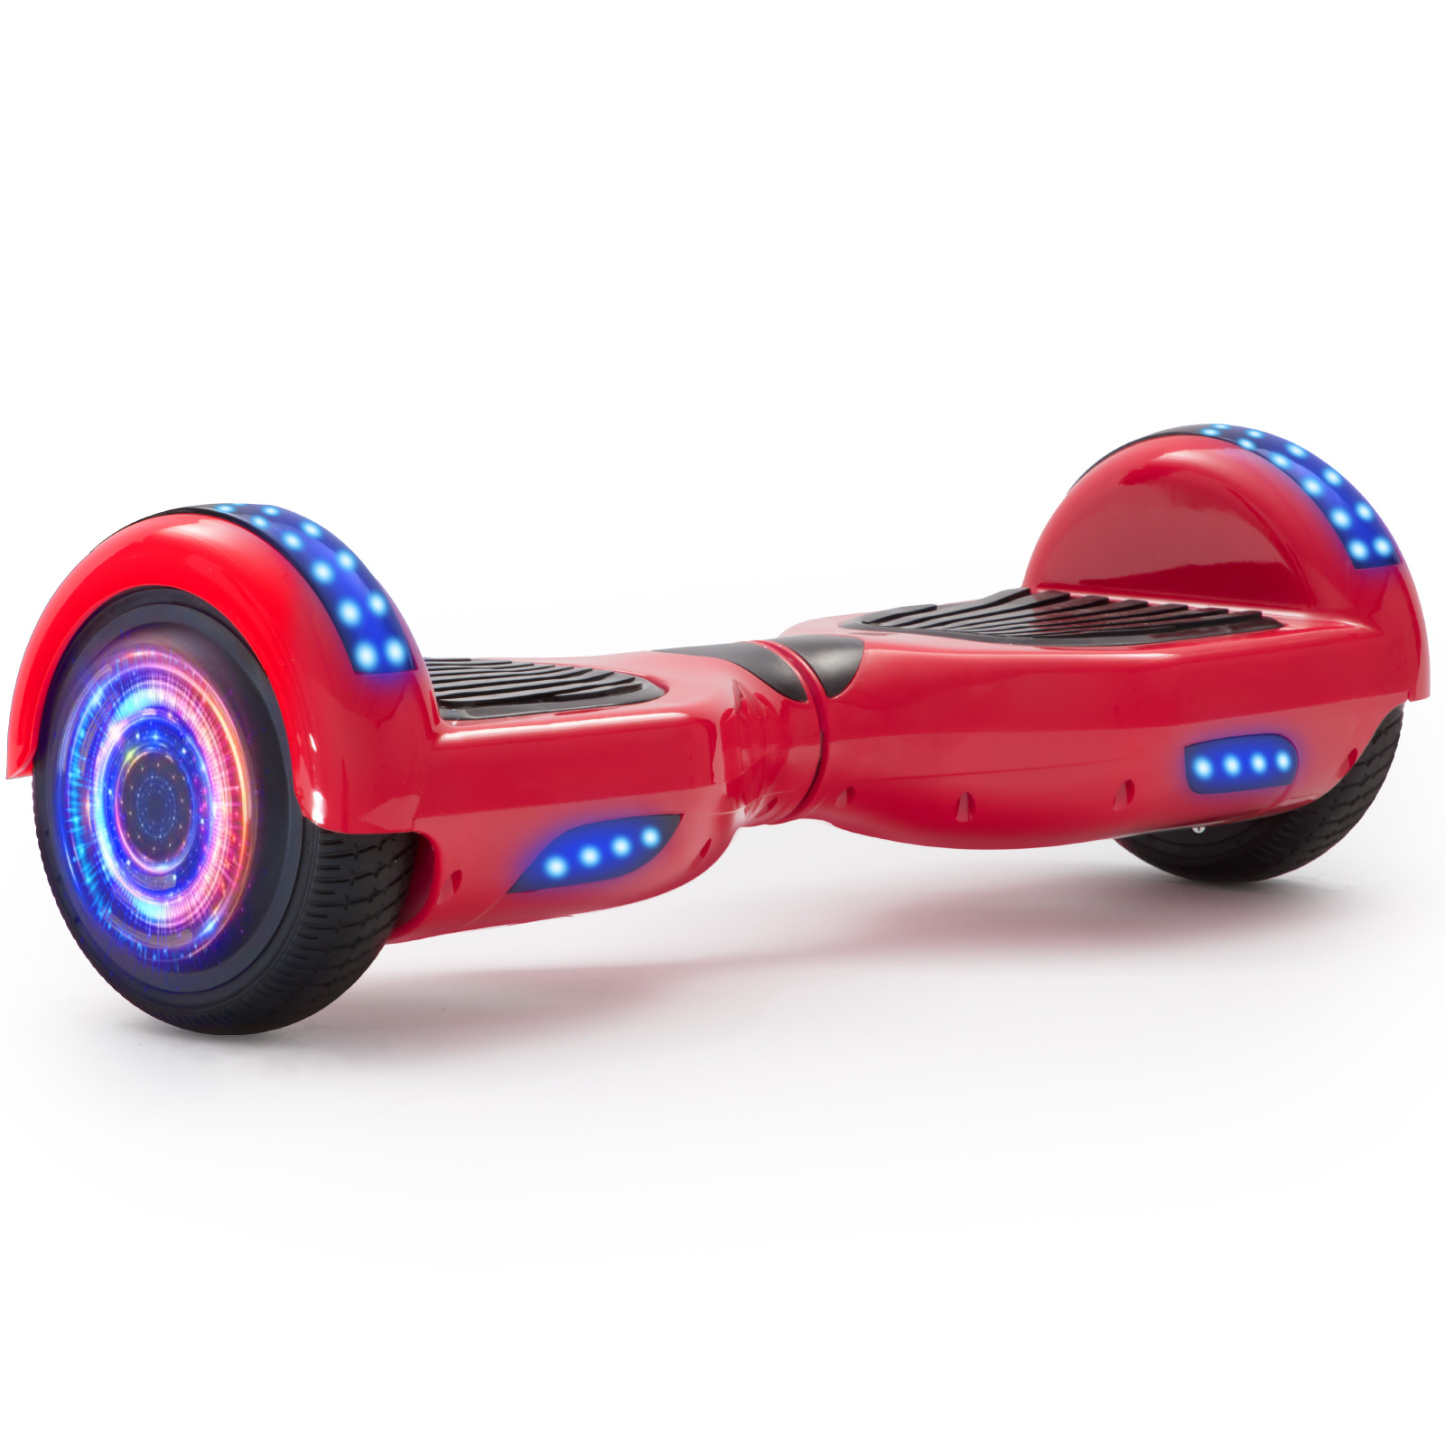 Neues 6,5" Hoverboard rot mit Bluetooth Musik Lautsprecher und LED Licht - 500W 12km/h